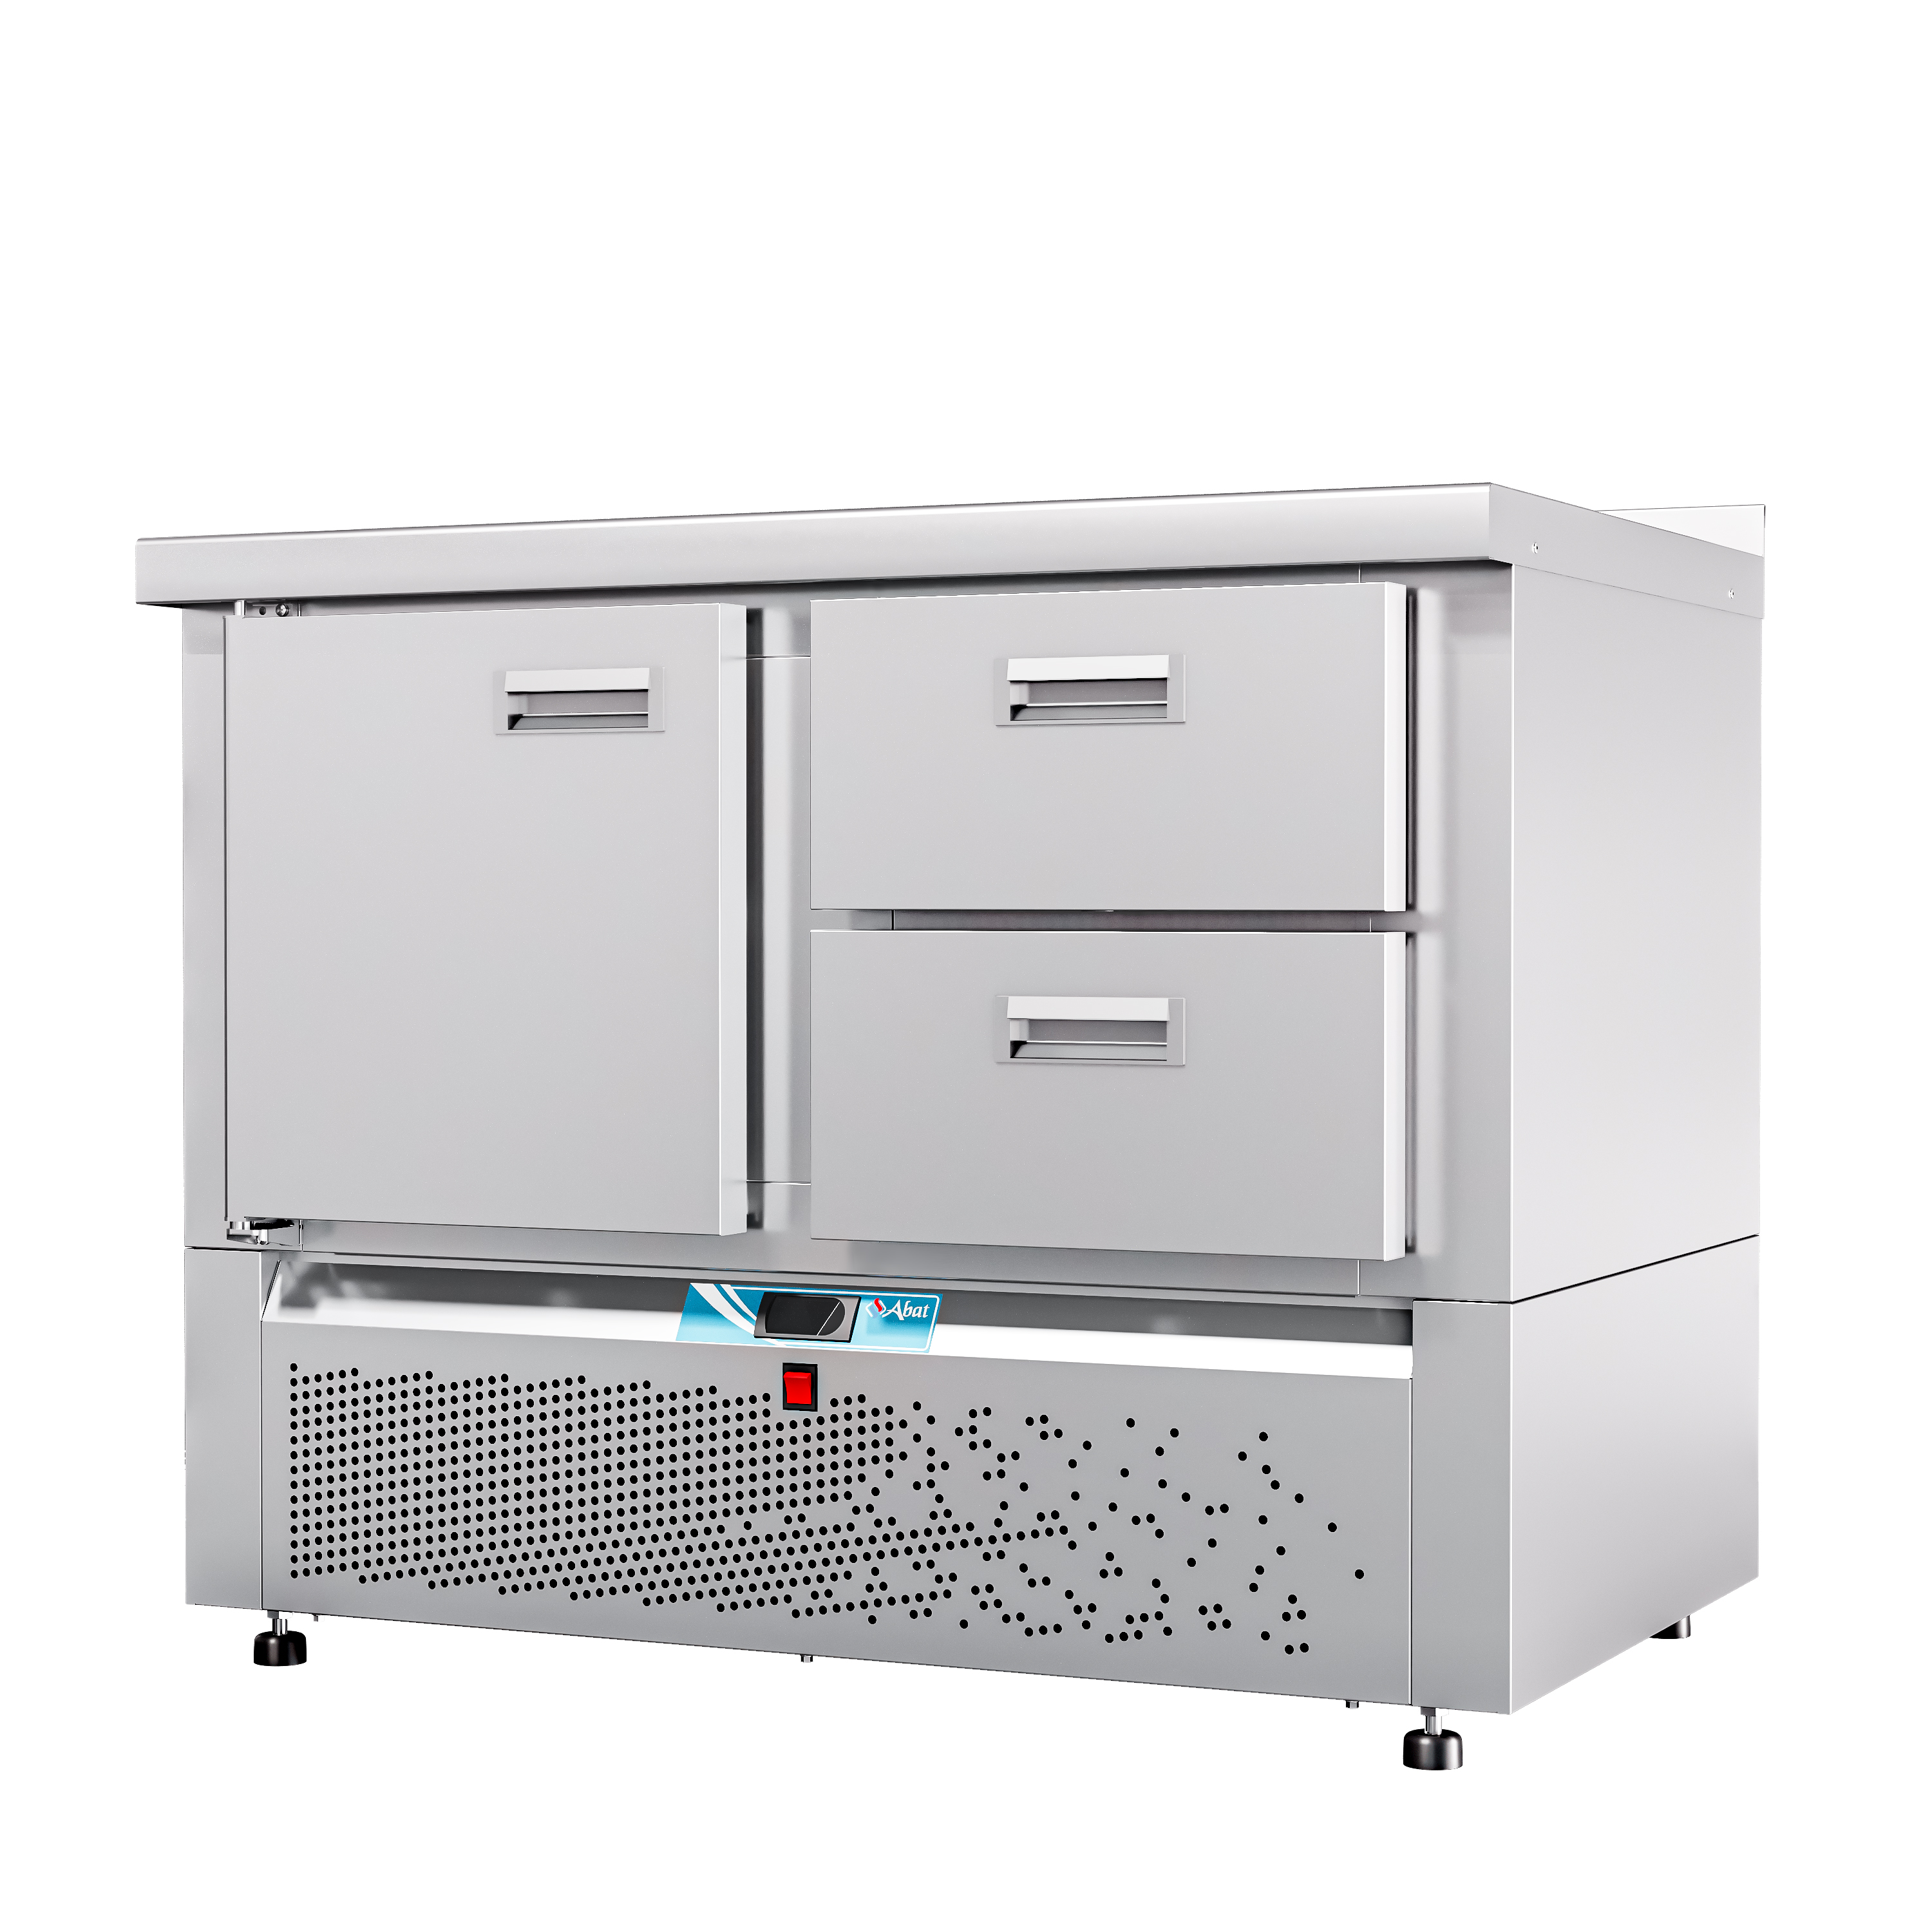 Стол холодильный среднетемпературный СХС-70Н-01 (дверь, ящики 1/2) с бортом